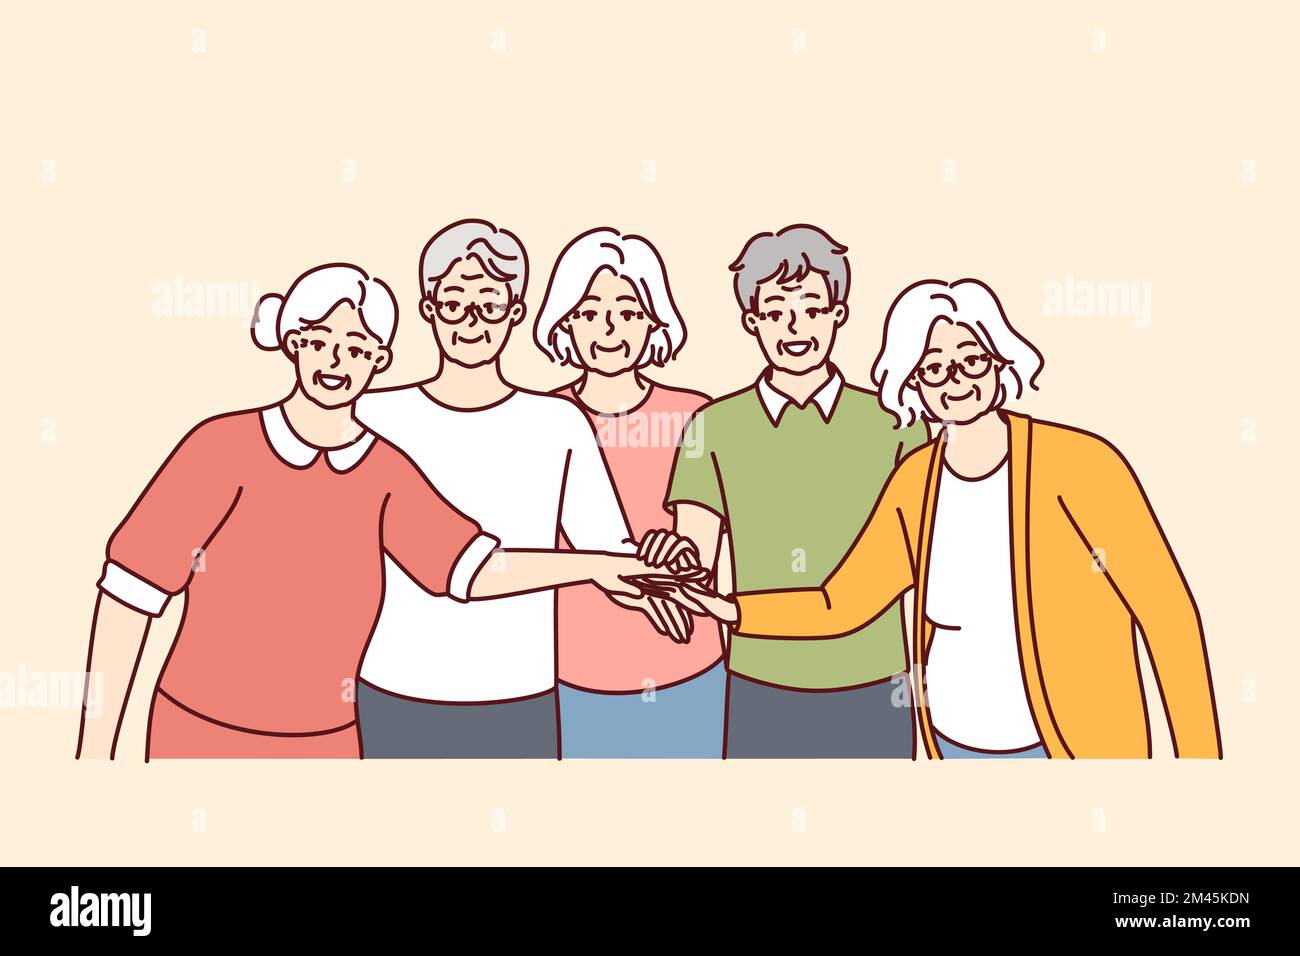 Ältere Männer und Frauen mit grauen Haaren stehen mit ausgestreckten Händen zur Mitte und demonstrieren Solidarität. Freundliche Rentner aus dem Pflegeheim in legerer Kleidung mit Lächeln. Flaches Vektorbild Stock Vektor